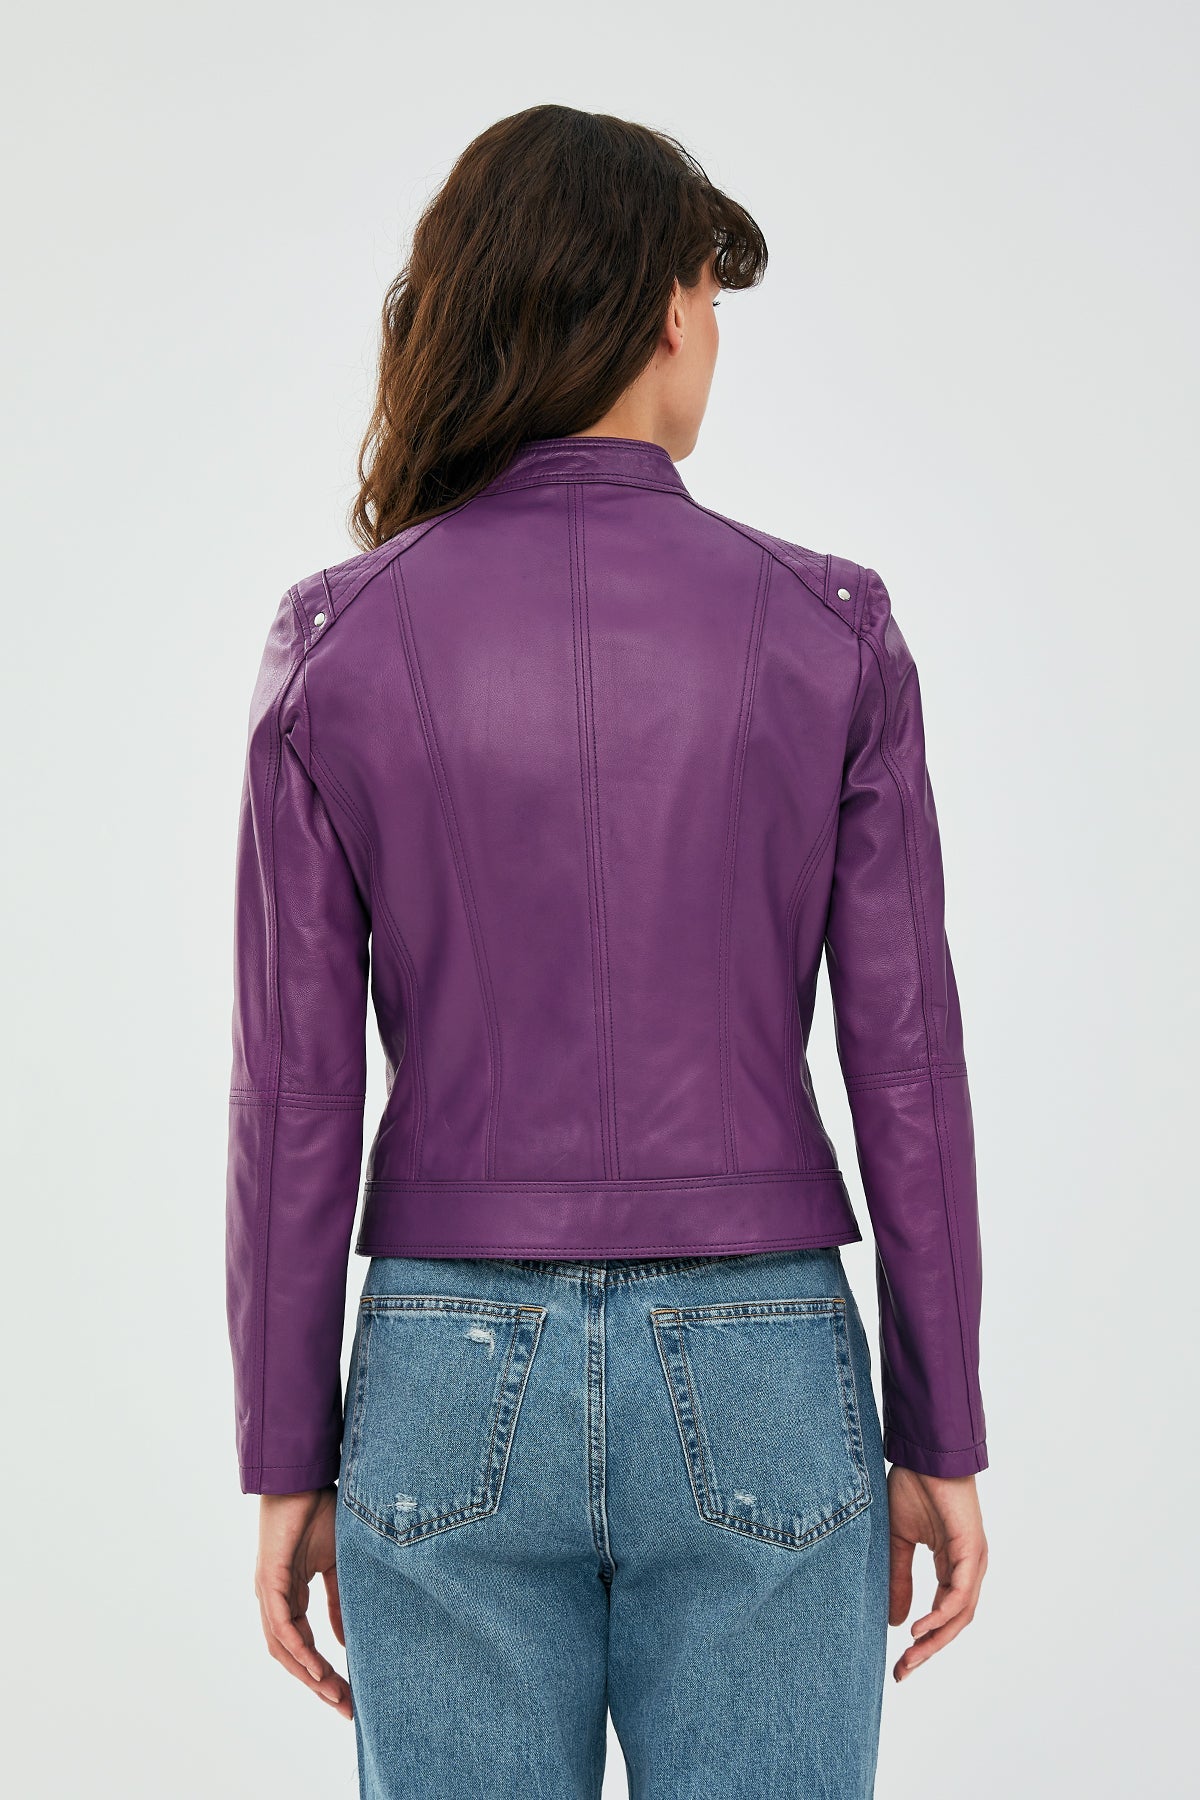 Sonia Women's Purple Leather Jacket